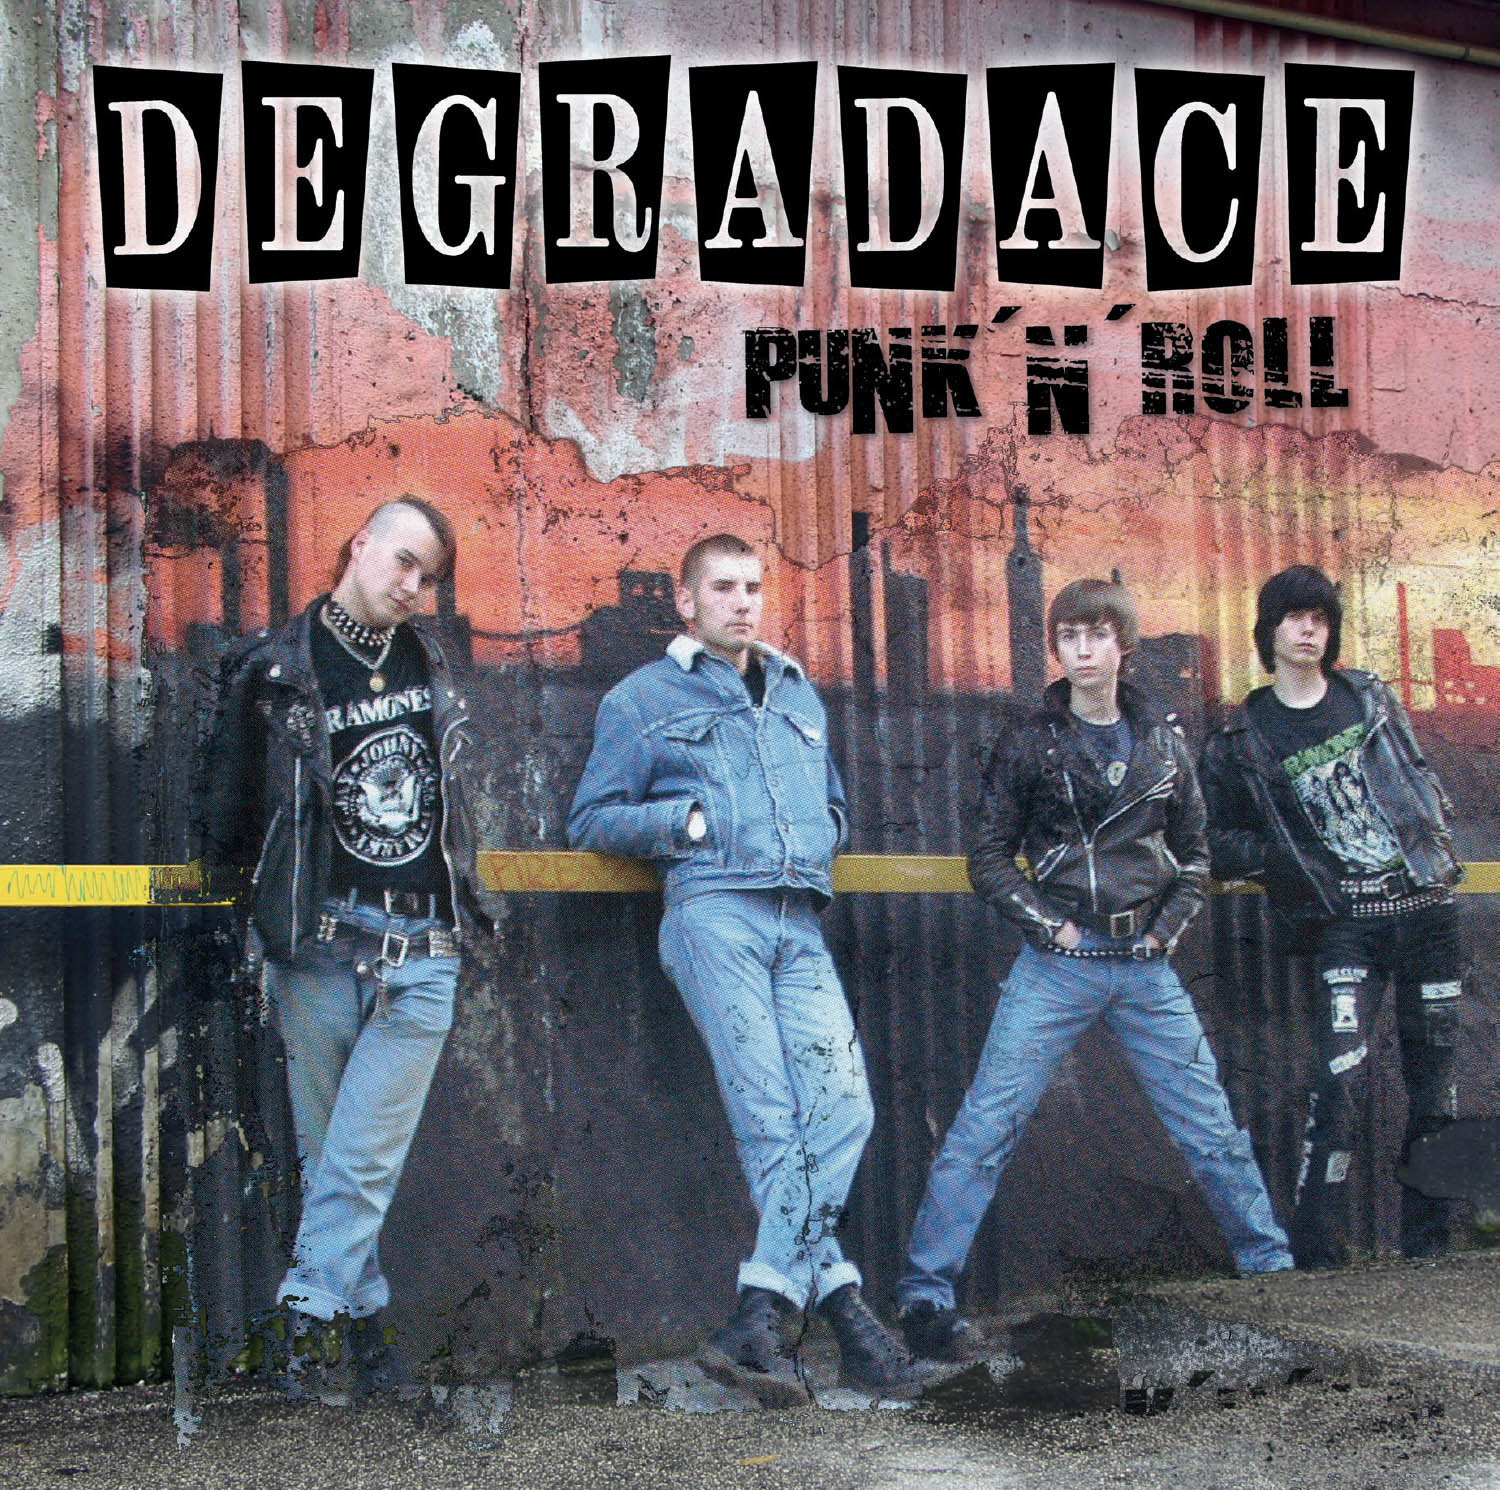 Degradace – Punk’n’roll